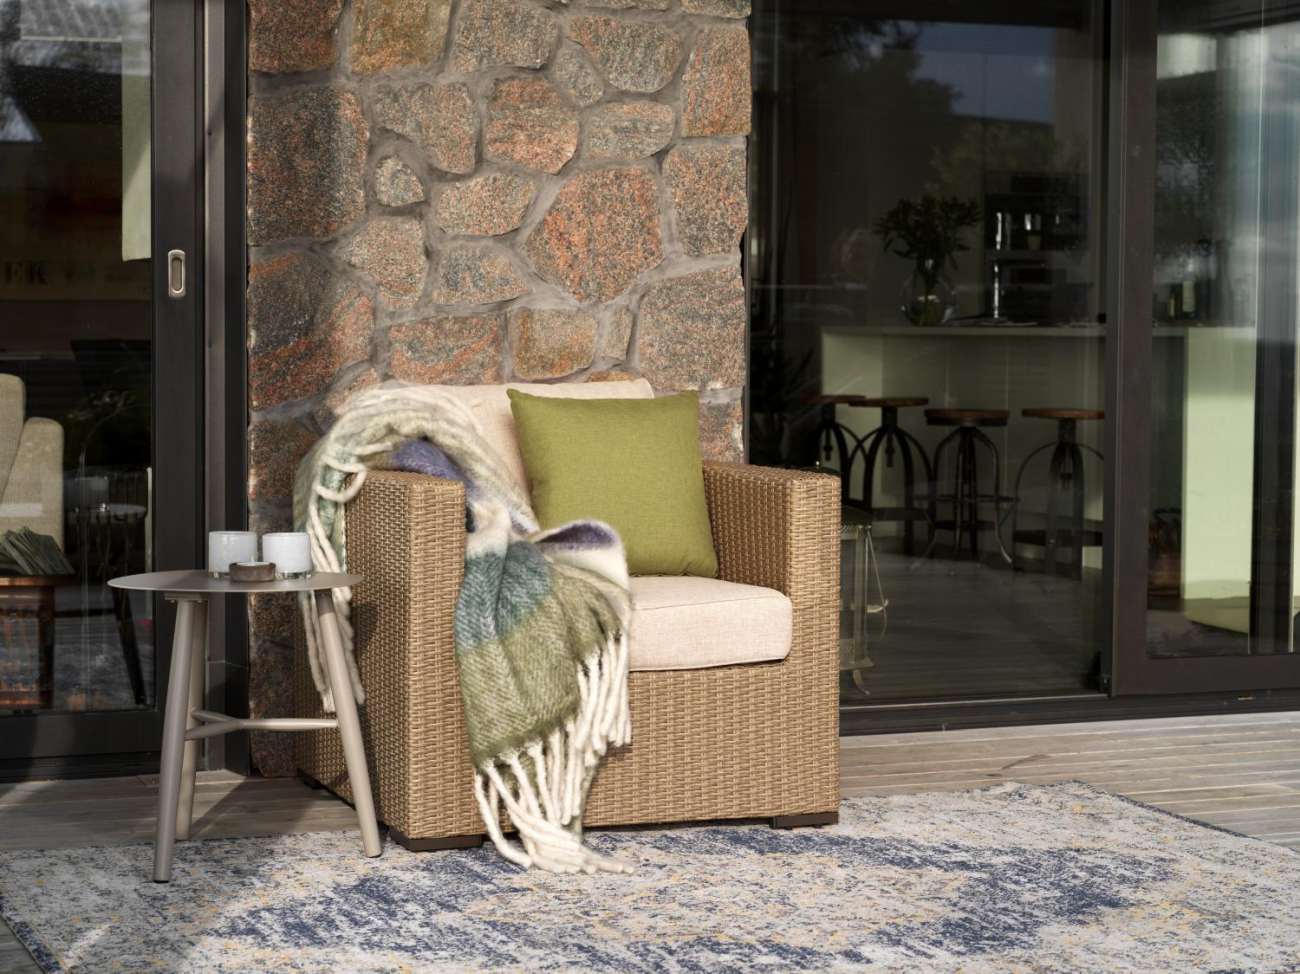 Der Gartensessel Funkia überzeugt mit seinem modernen Design. Gefertigt wurde er aus Rattan, welches einen Beigen Farbton besitzt. Das Gestell ist auch aus Rattan und hat eine Beigen Farbe. Die Sitzhöhe des Sessels beträgt 46 cm.